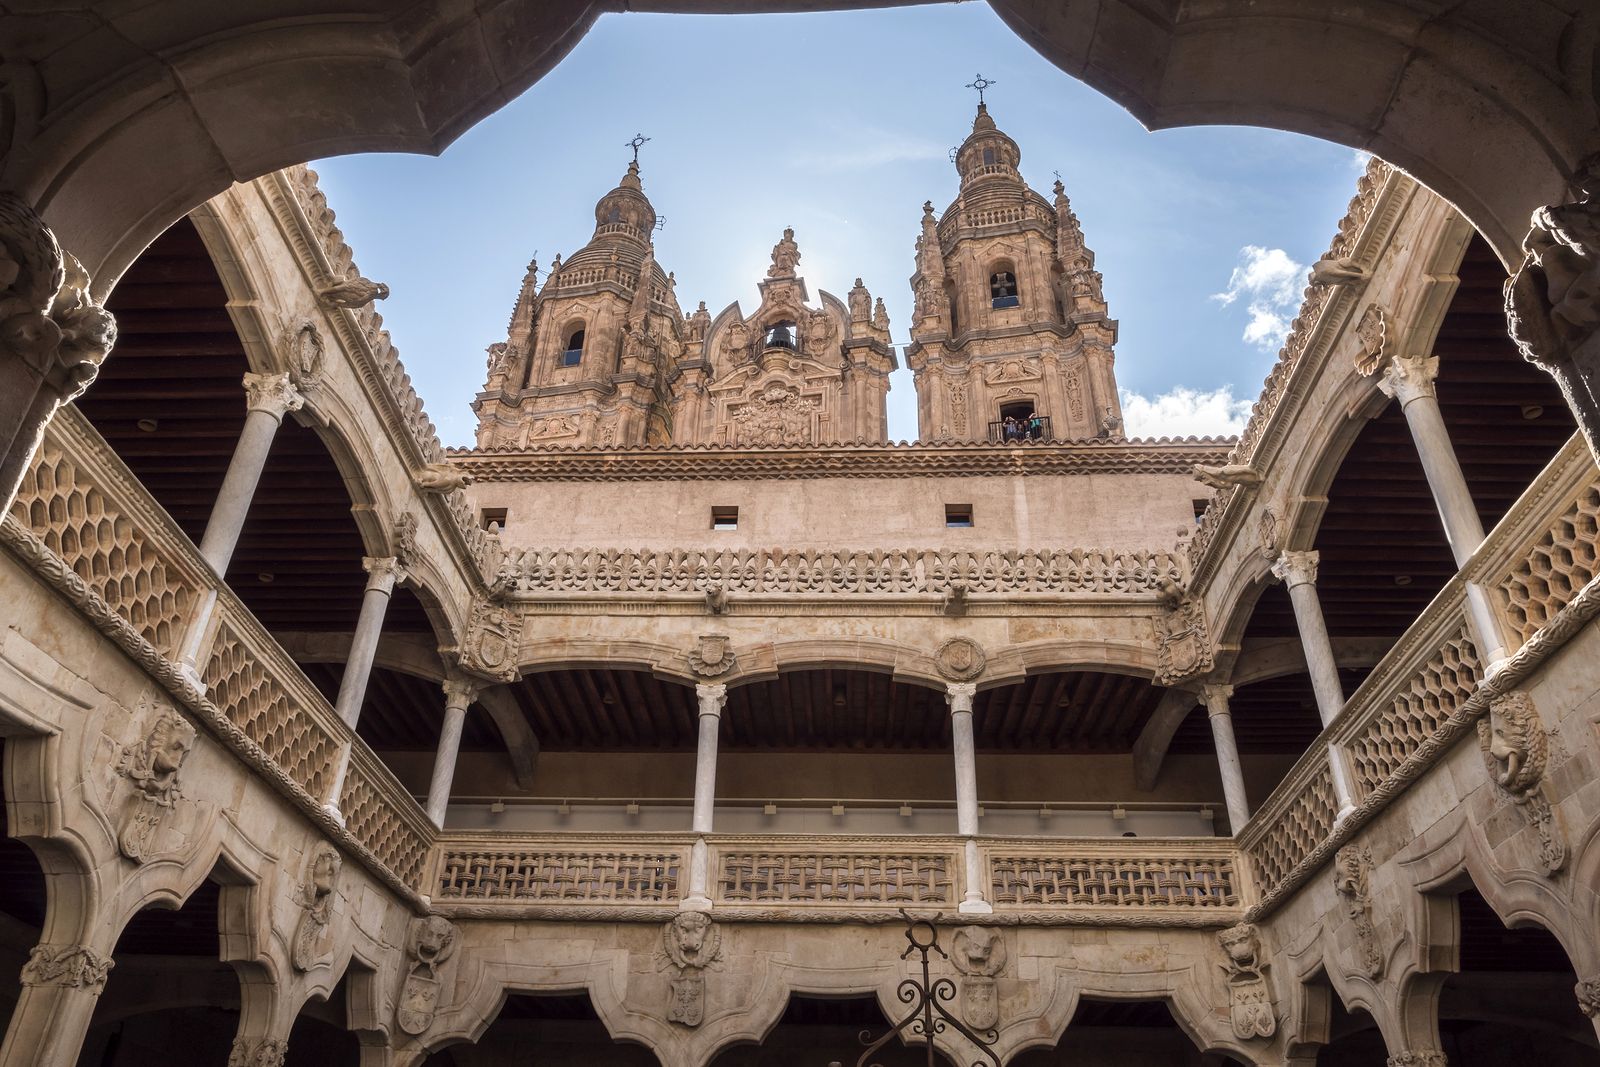 Museos gratis o con entrada reducida para personas mayores de 65 años en Salamanca